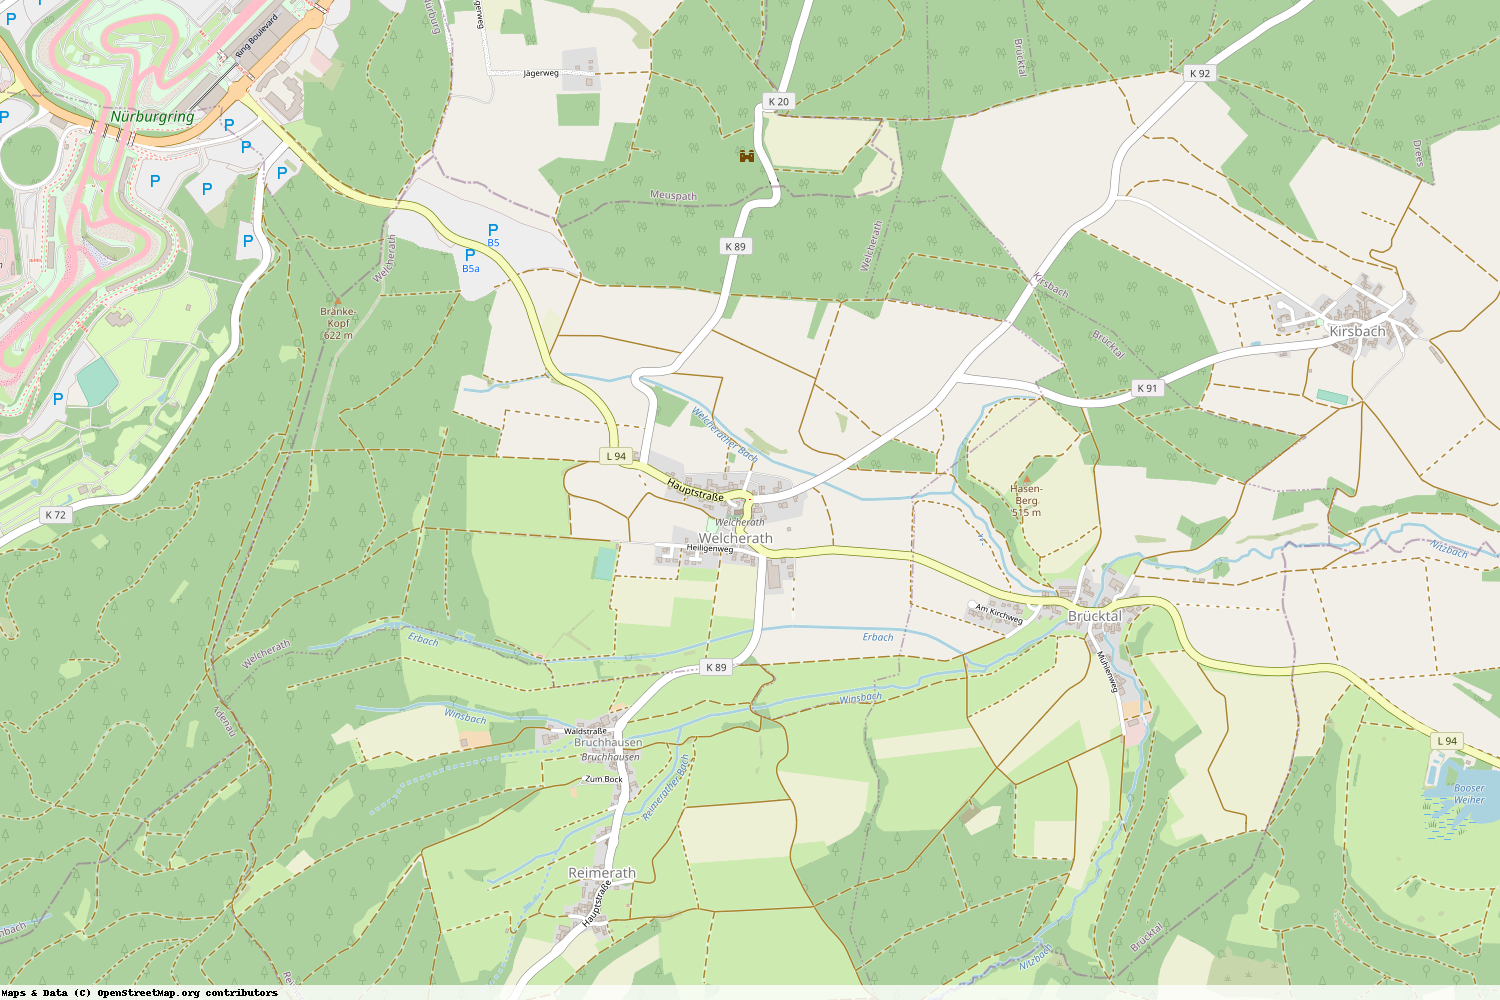 Ist gerade Stromausfall in Rheinland-Pfalz - Vulkaneifel - Welcherath?